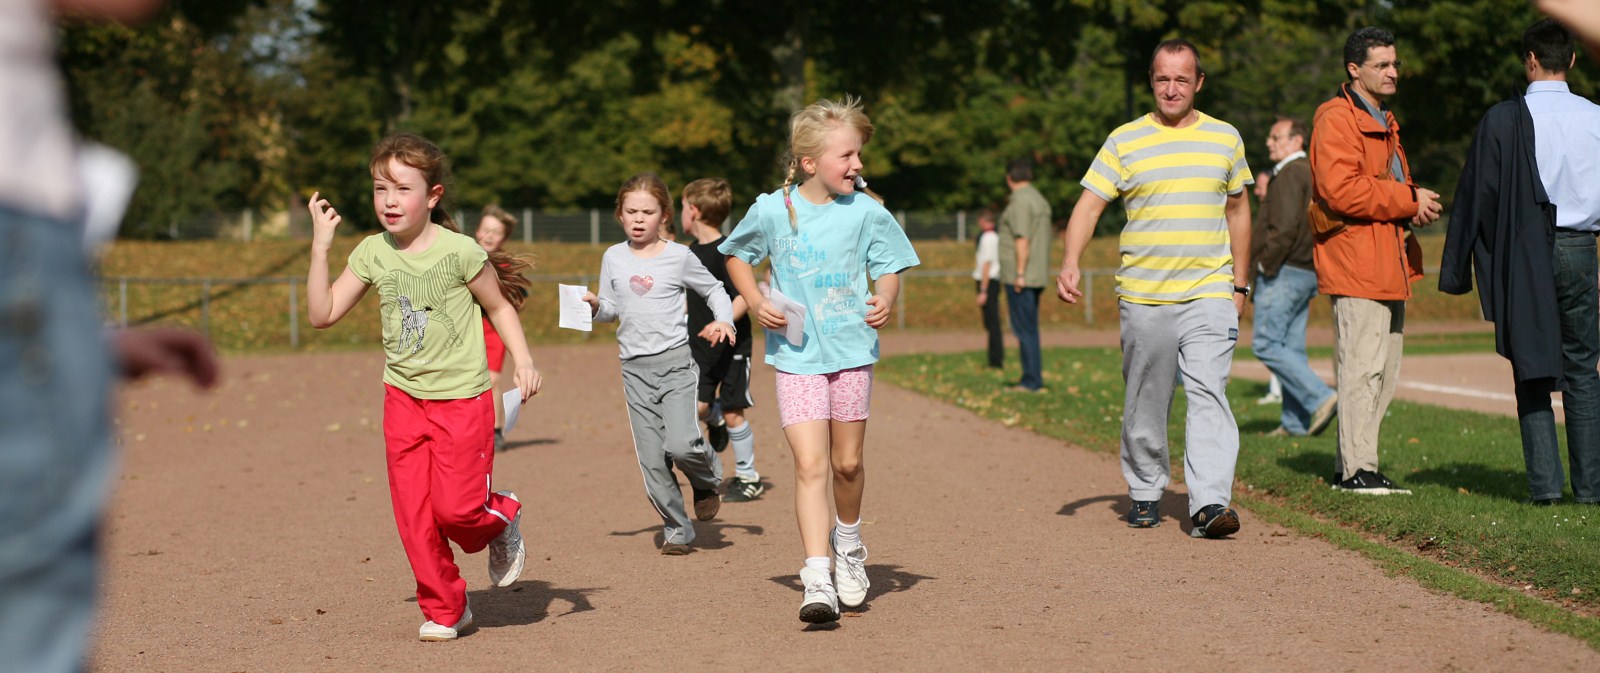 Kinder laufen beim Sponsorenlauf